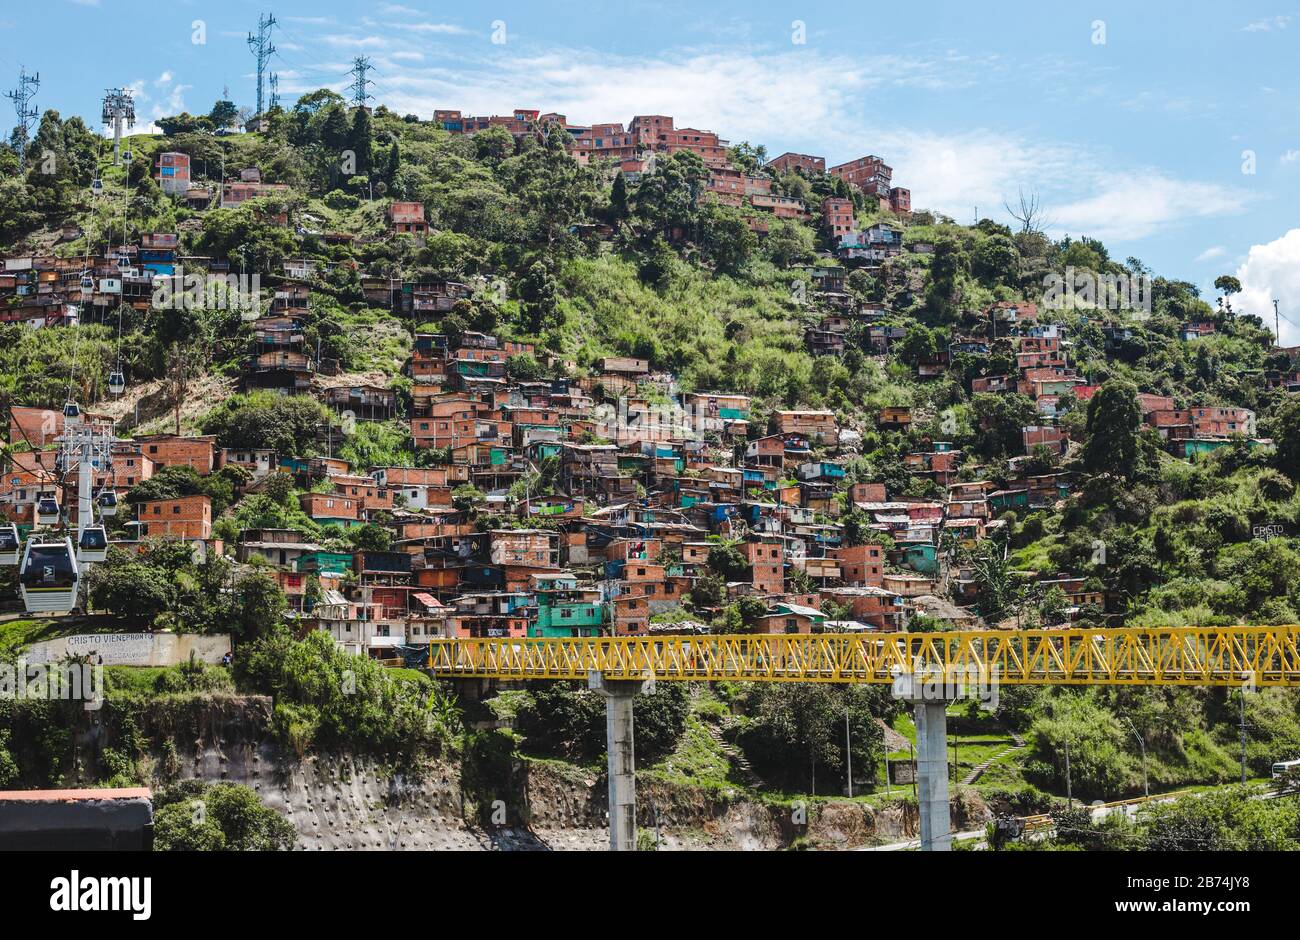 Case di espansione di un barrio comuna nelle zone esterne economicamente svantaggiate di Medellin, Colombia Foto Stock